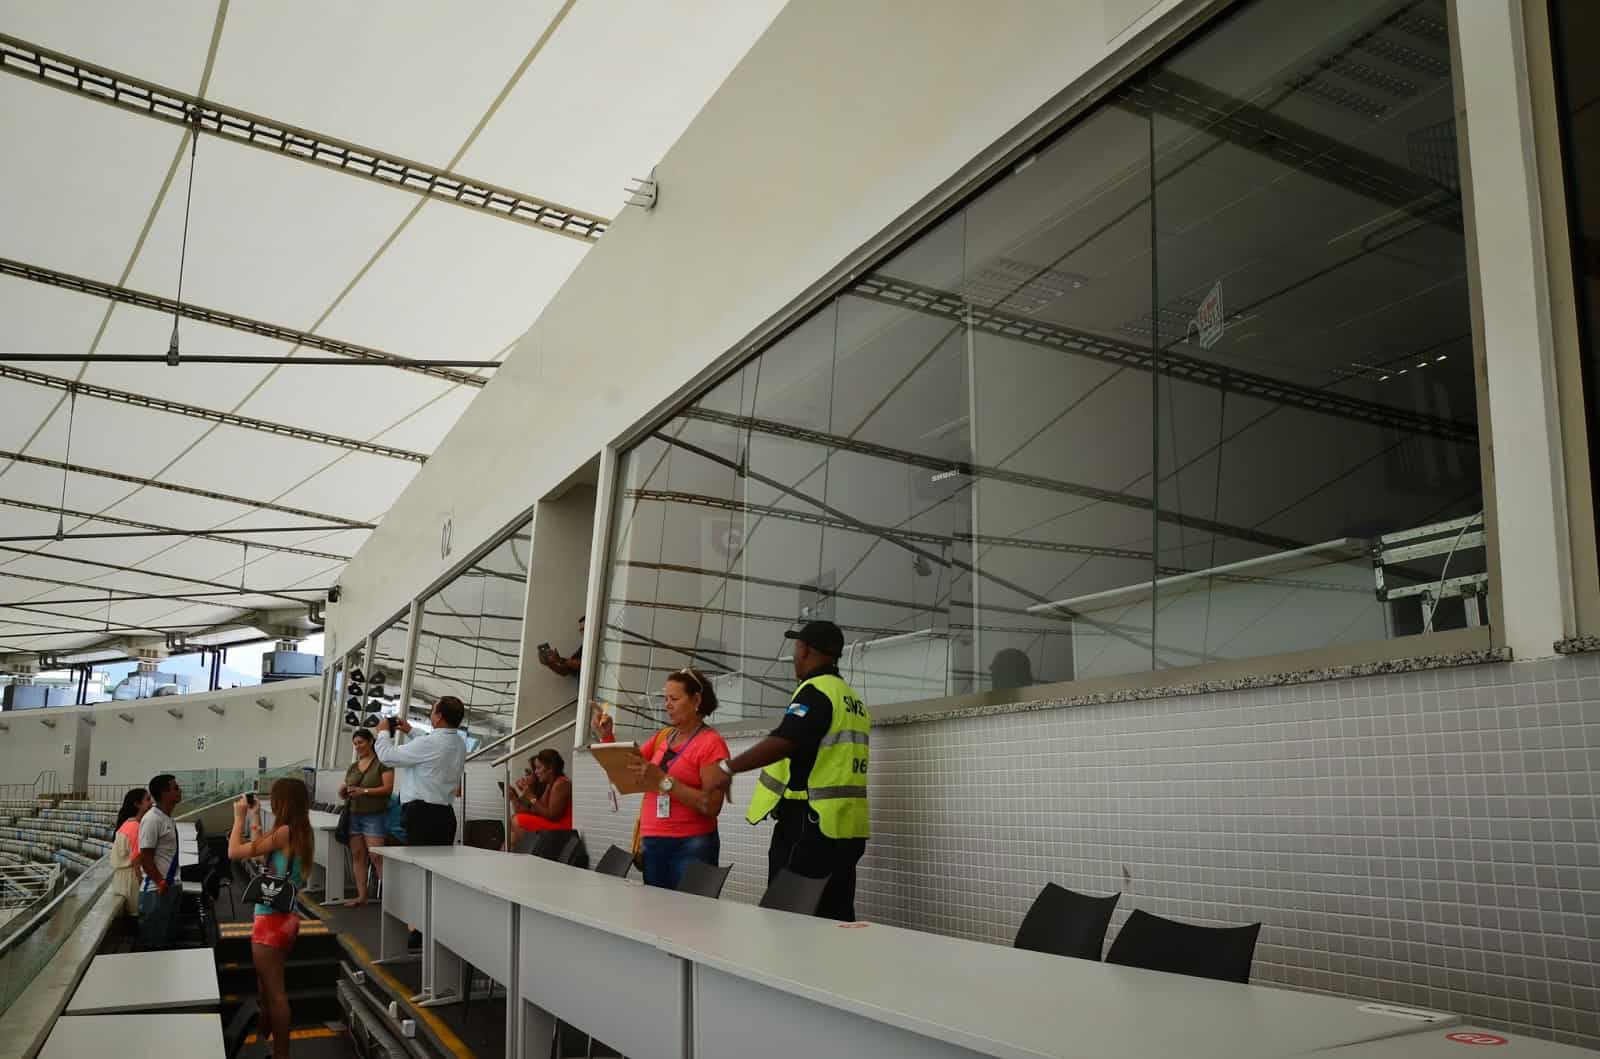 Press area at Estádio do Maracanã in Rio de Janeiro, Brazil